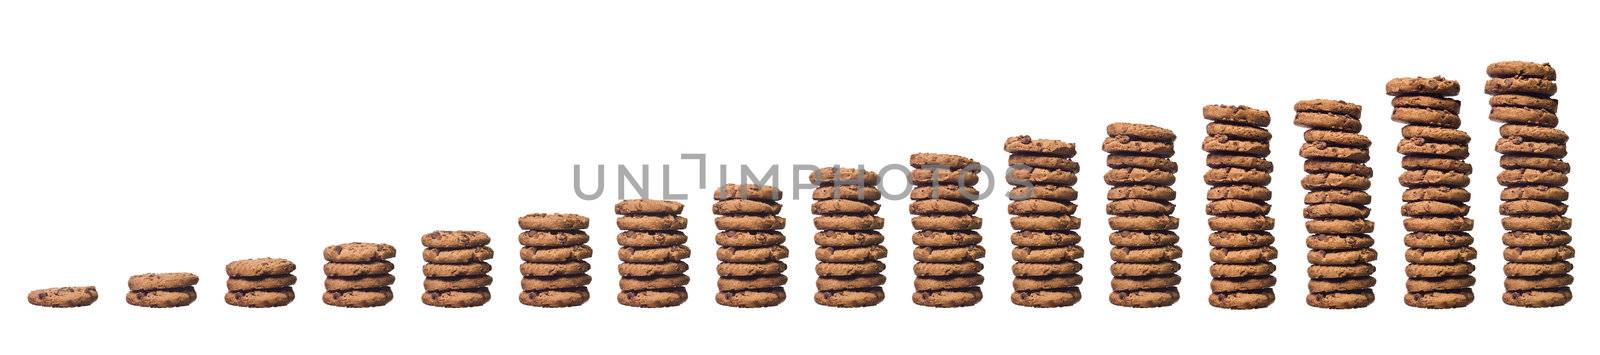 Cookie stacks by gemenacom